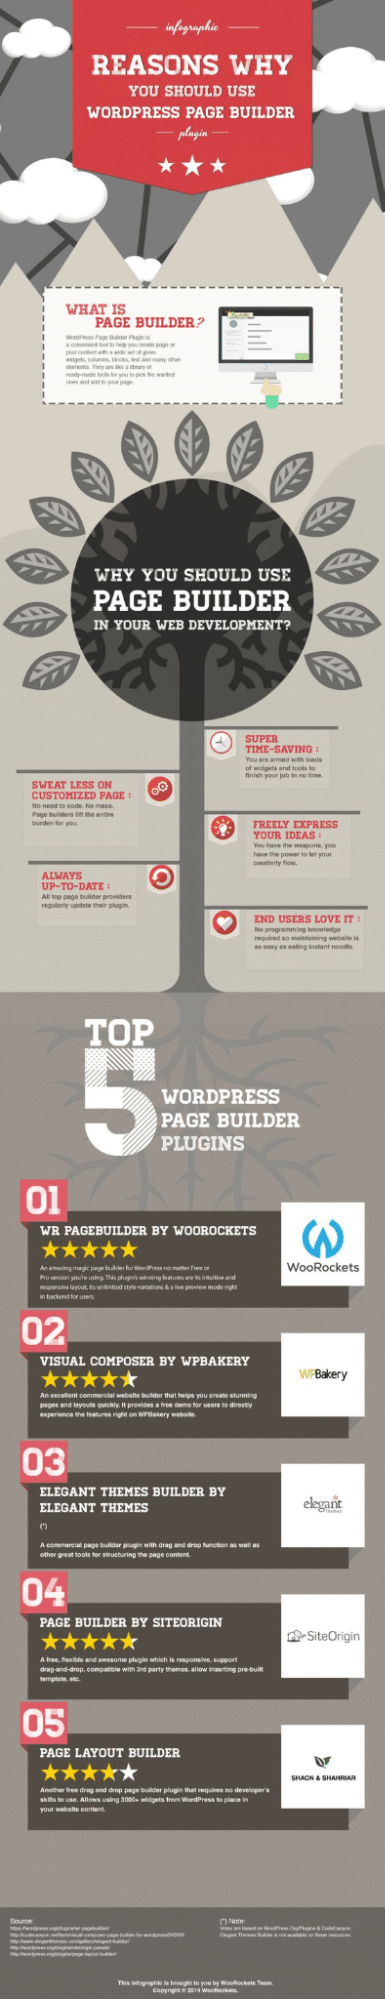 Les raisons pour lesquelles vous devez faire Usage de WordPress Page Builder